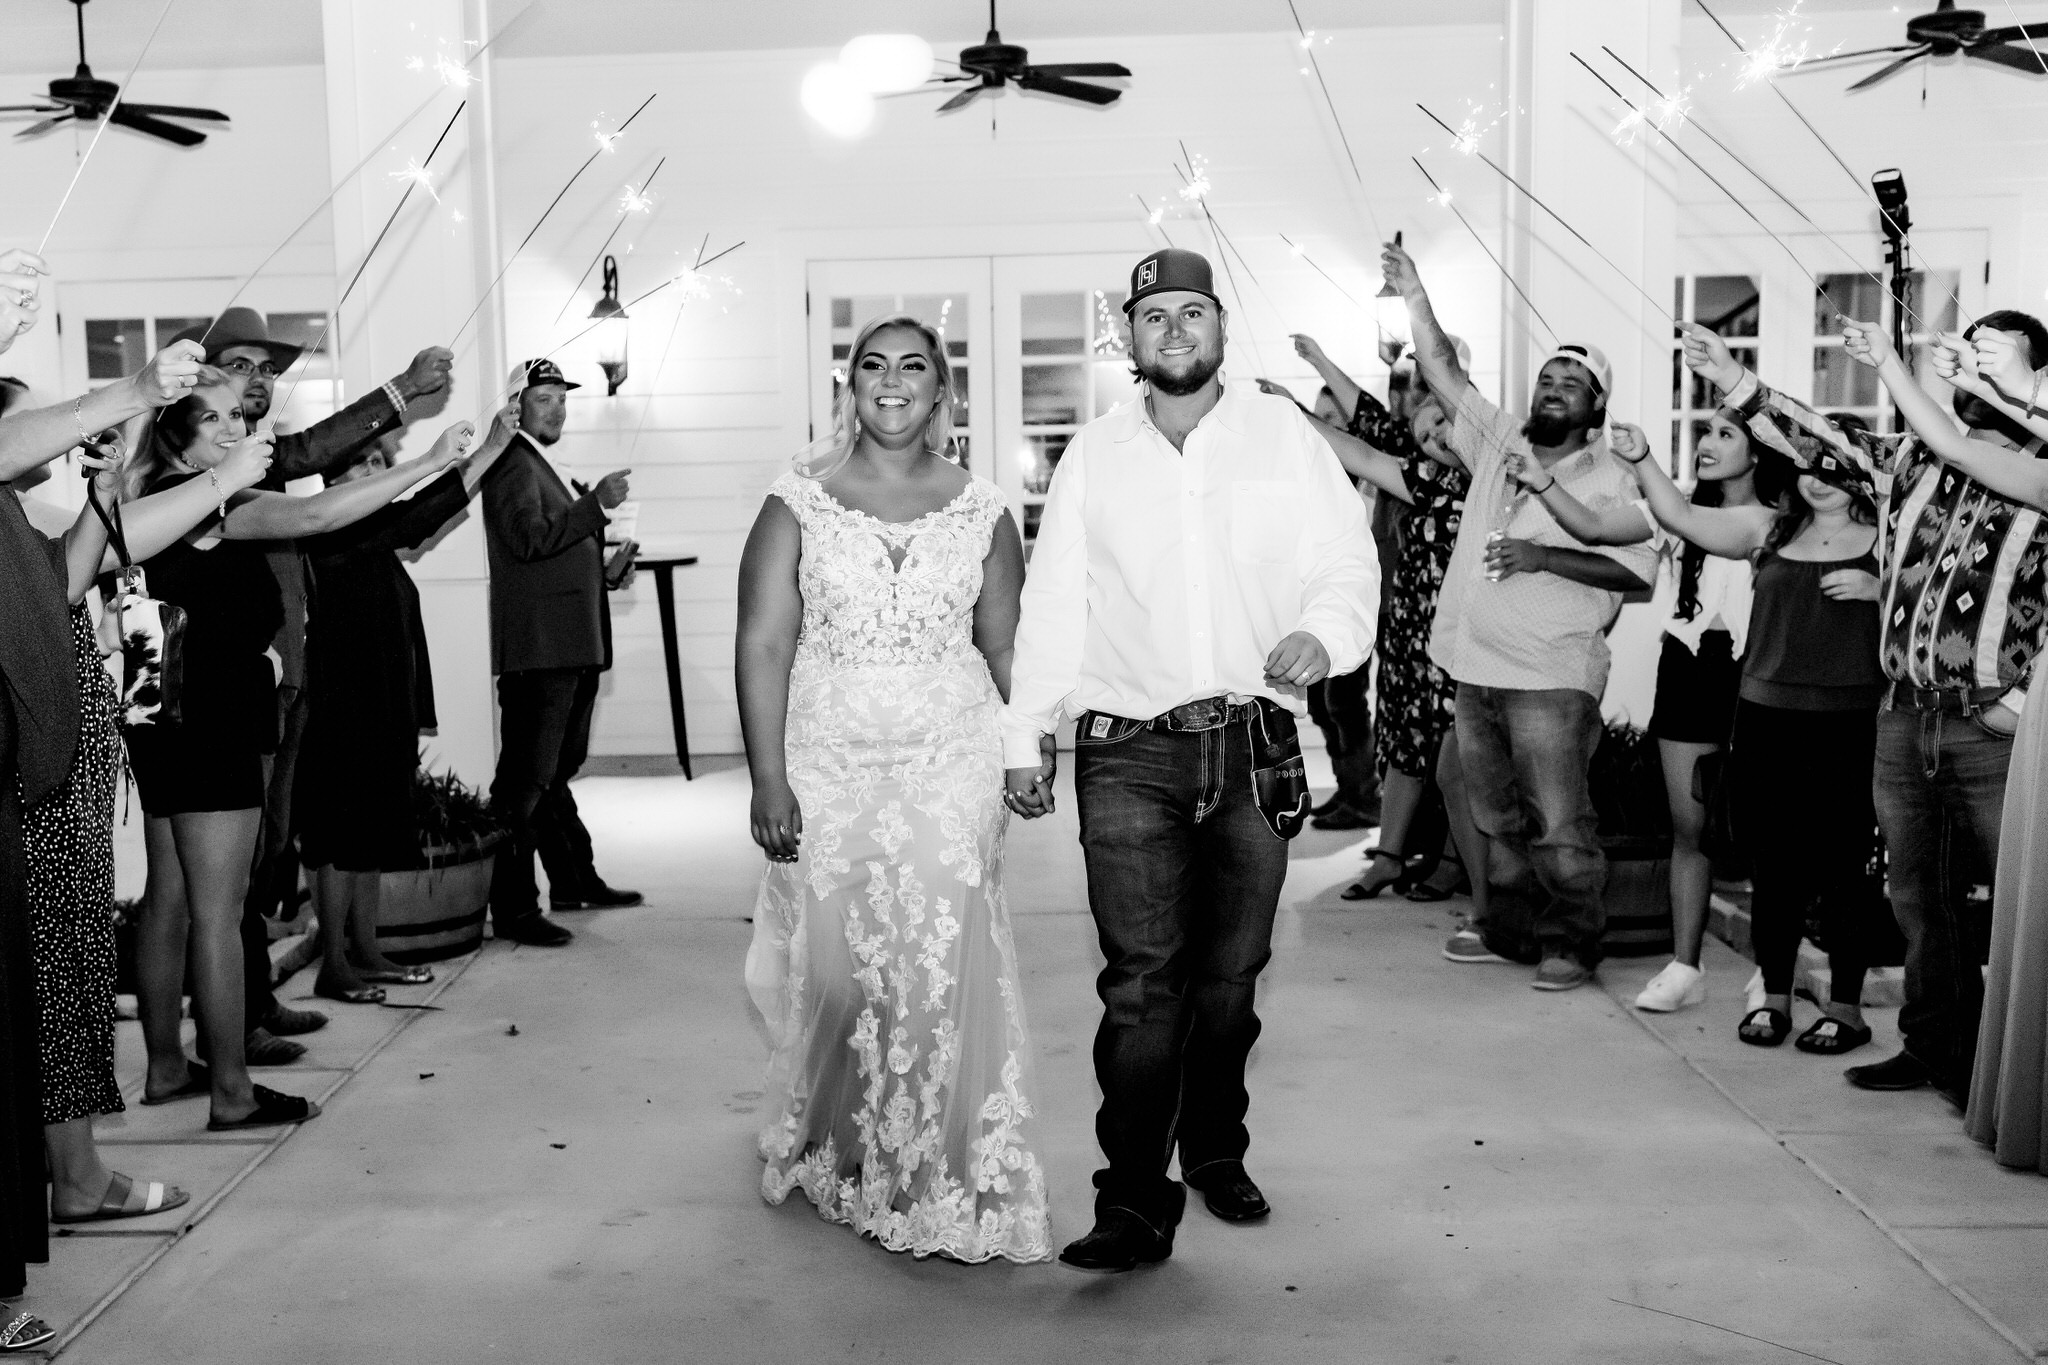 A Dusty Blue & Grey Rustic Wedding at Kendall Point in Boerne, TX by Dawn Elizabeth Studios, San Antonio Wedding Photographer